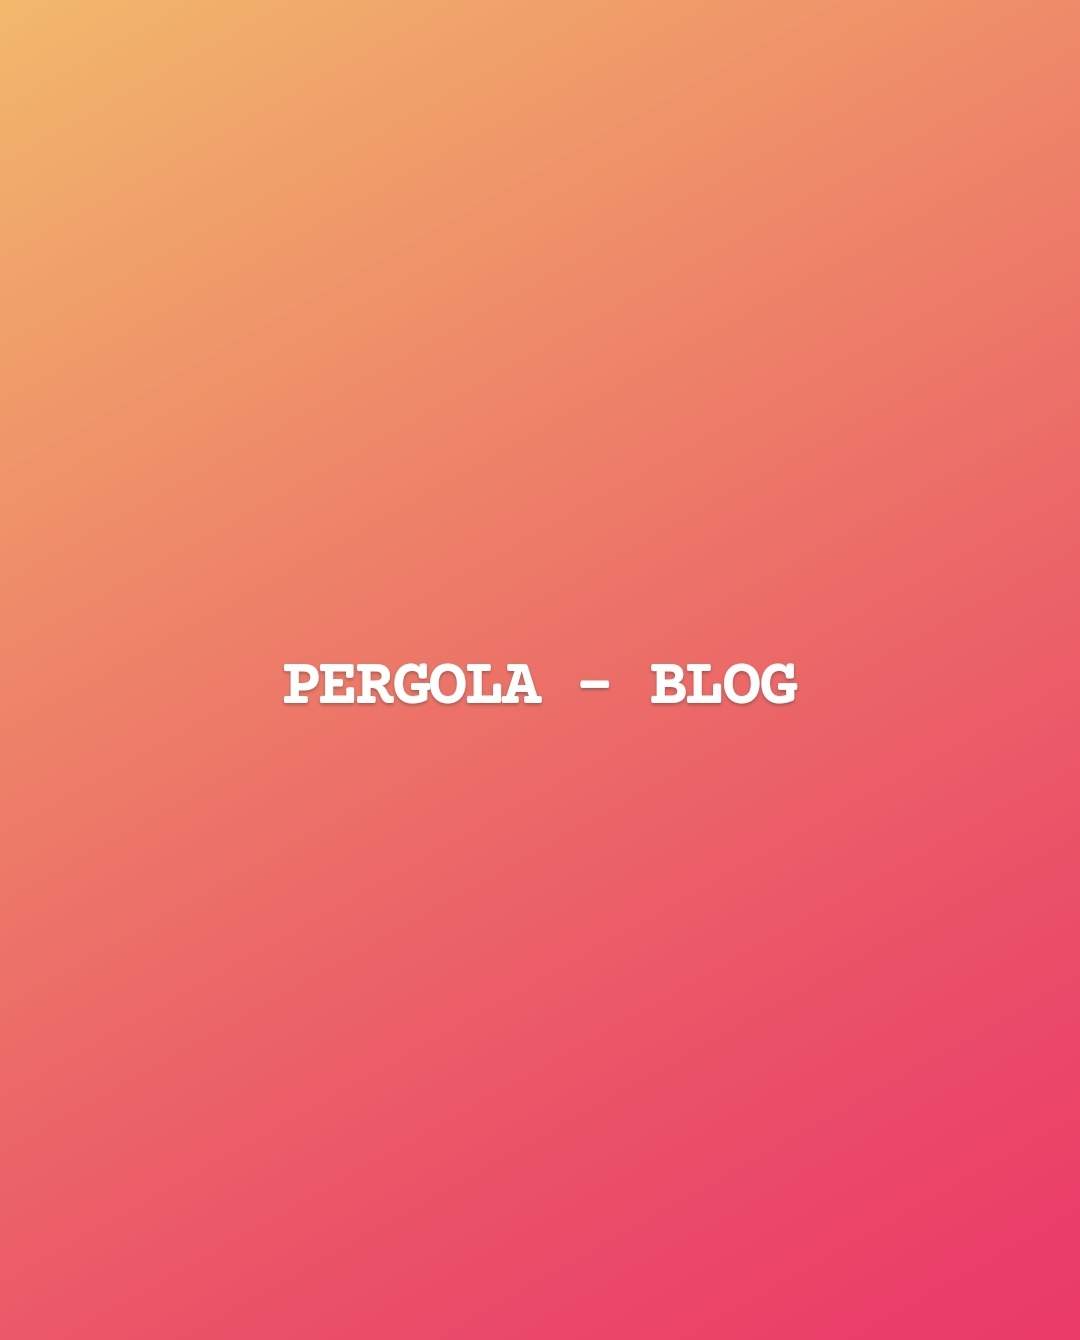 Pergola - Blog